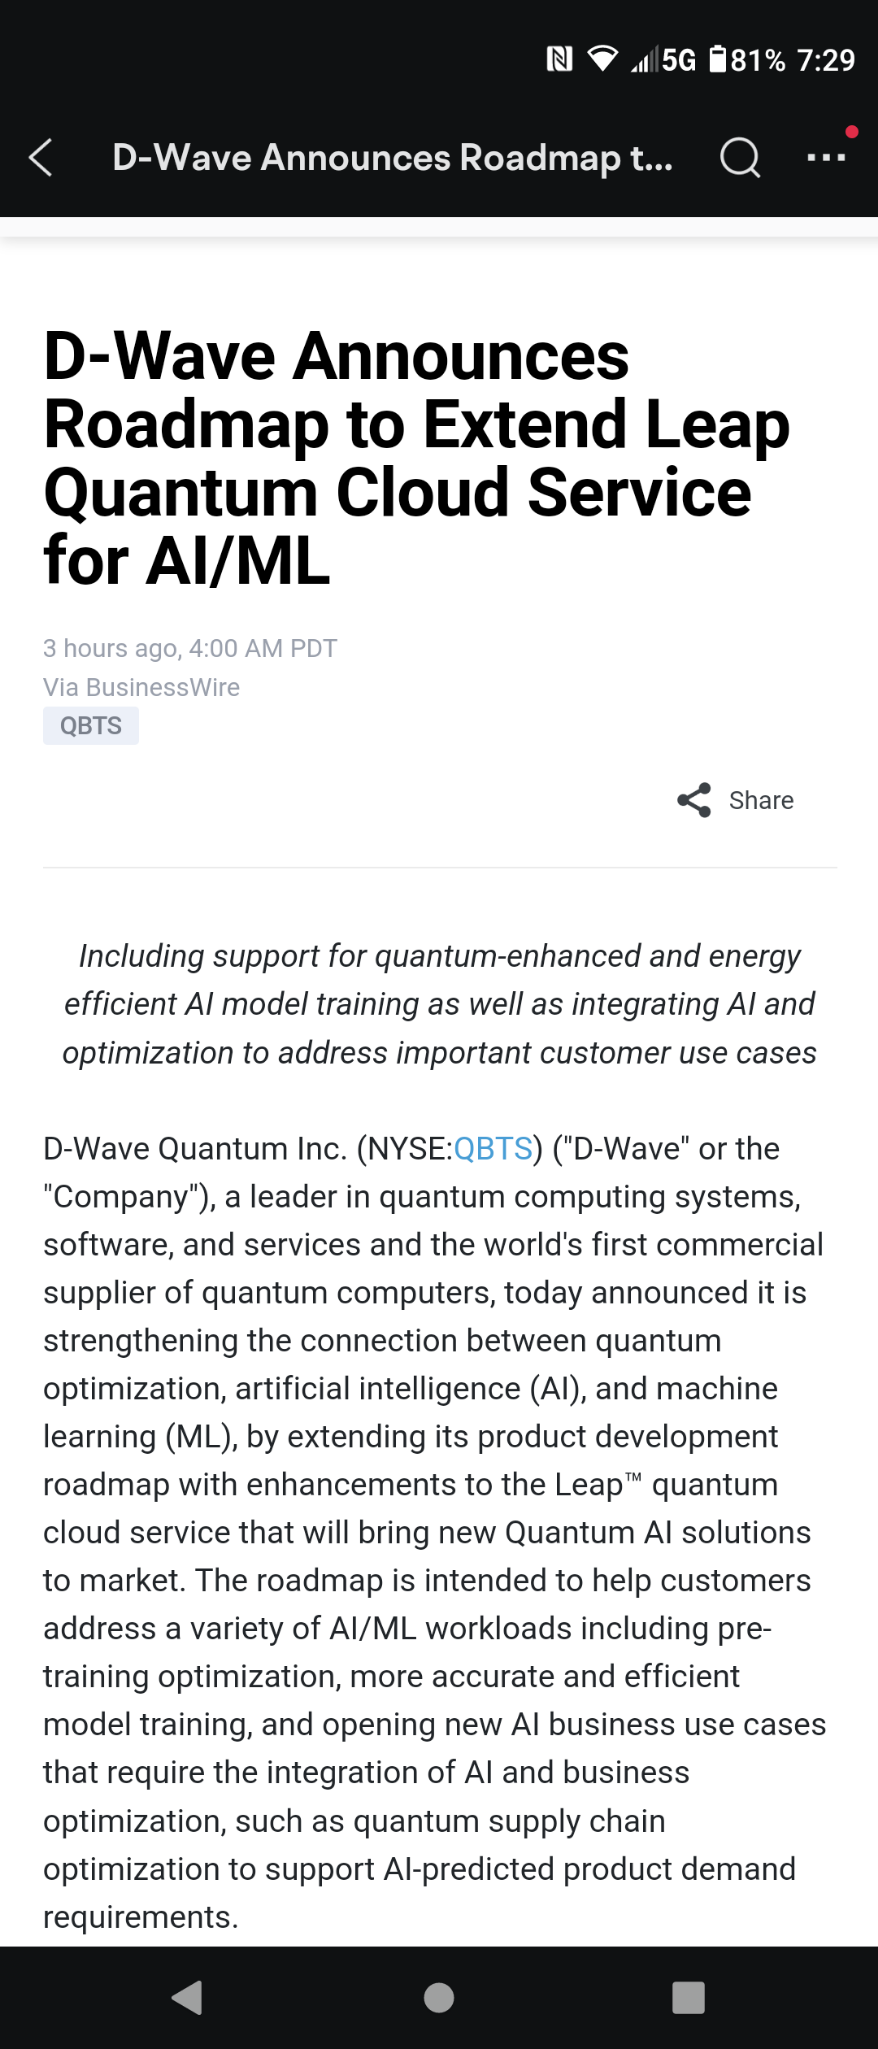 $D-Wave Quantum (QBTS.US)$ D-Wave 宣布擴展 Leap 量子雲服務的人工智慧/機器學習路線圖